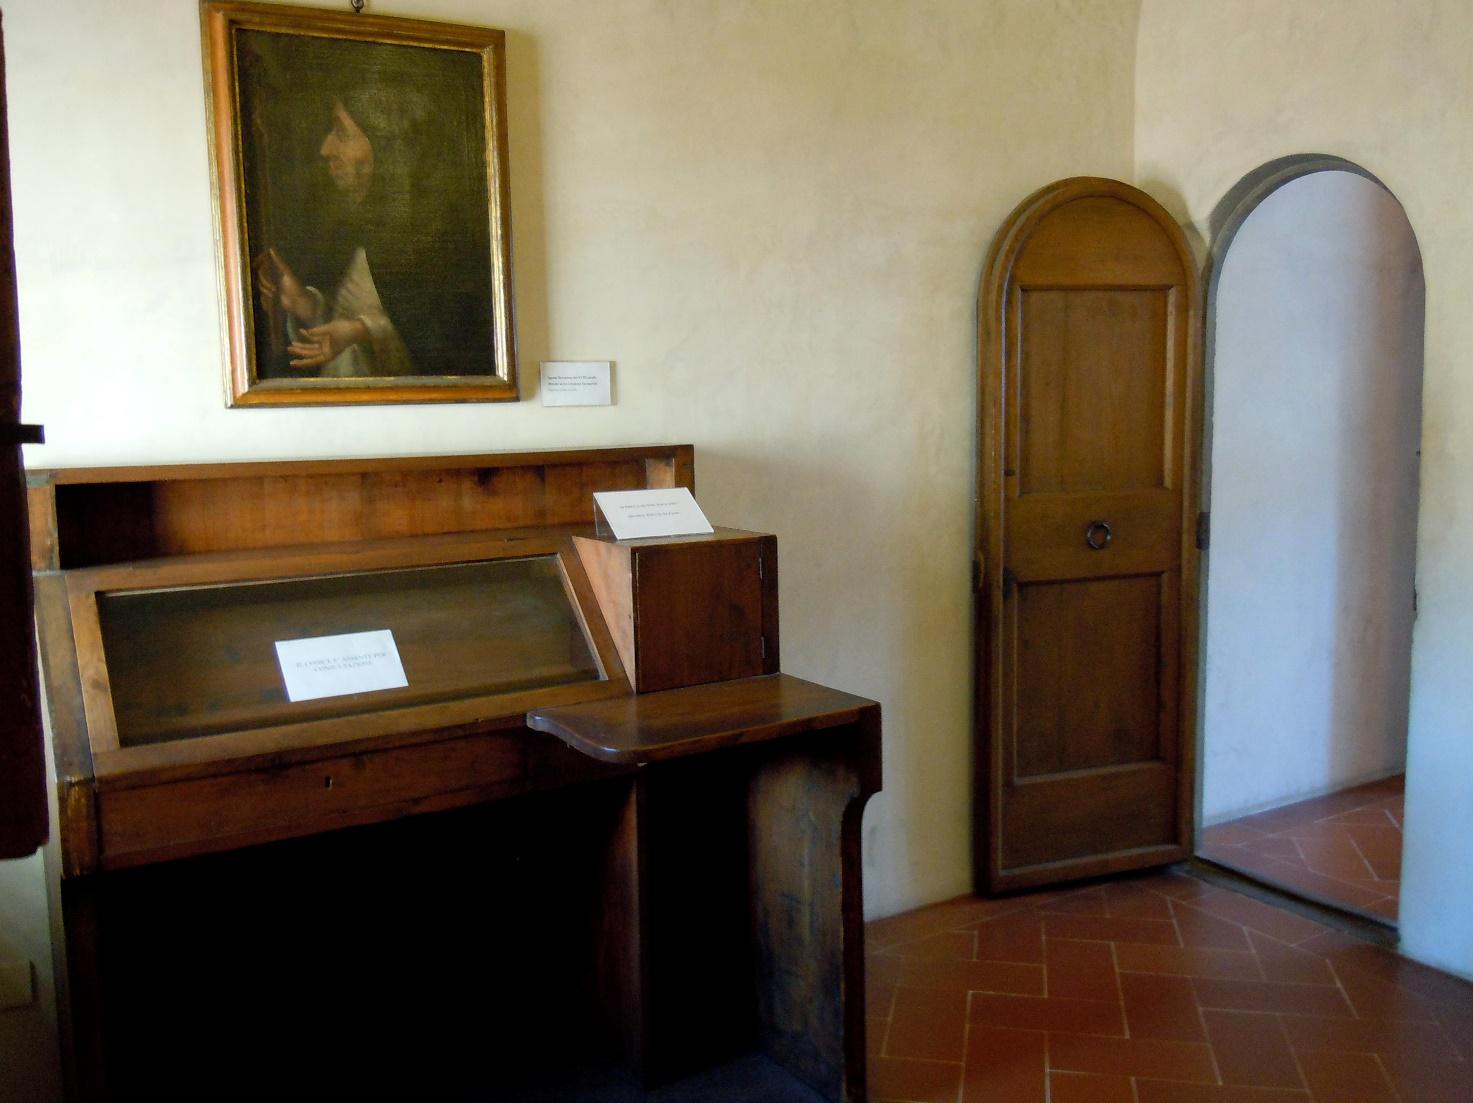 La cella di Savonarola. Foto: The Boxagon